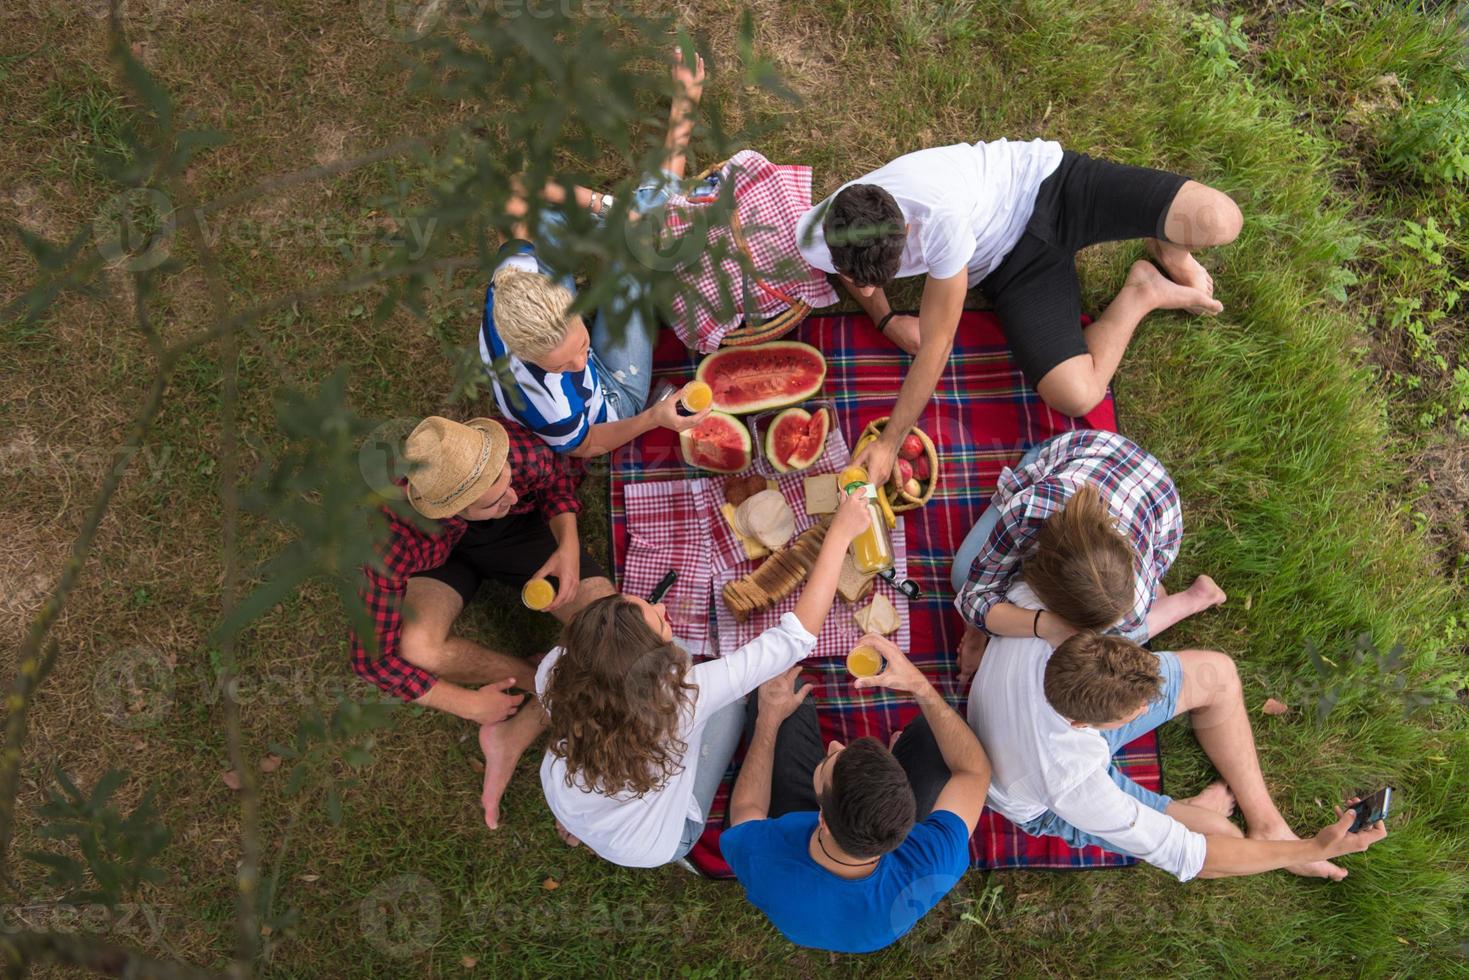 bovenaanzicht van groepsvrienden die genieten van picknicktijd foto